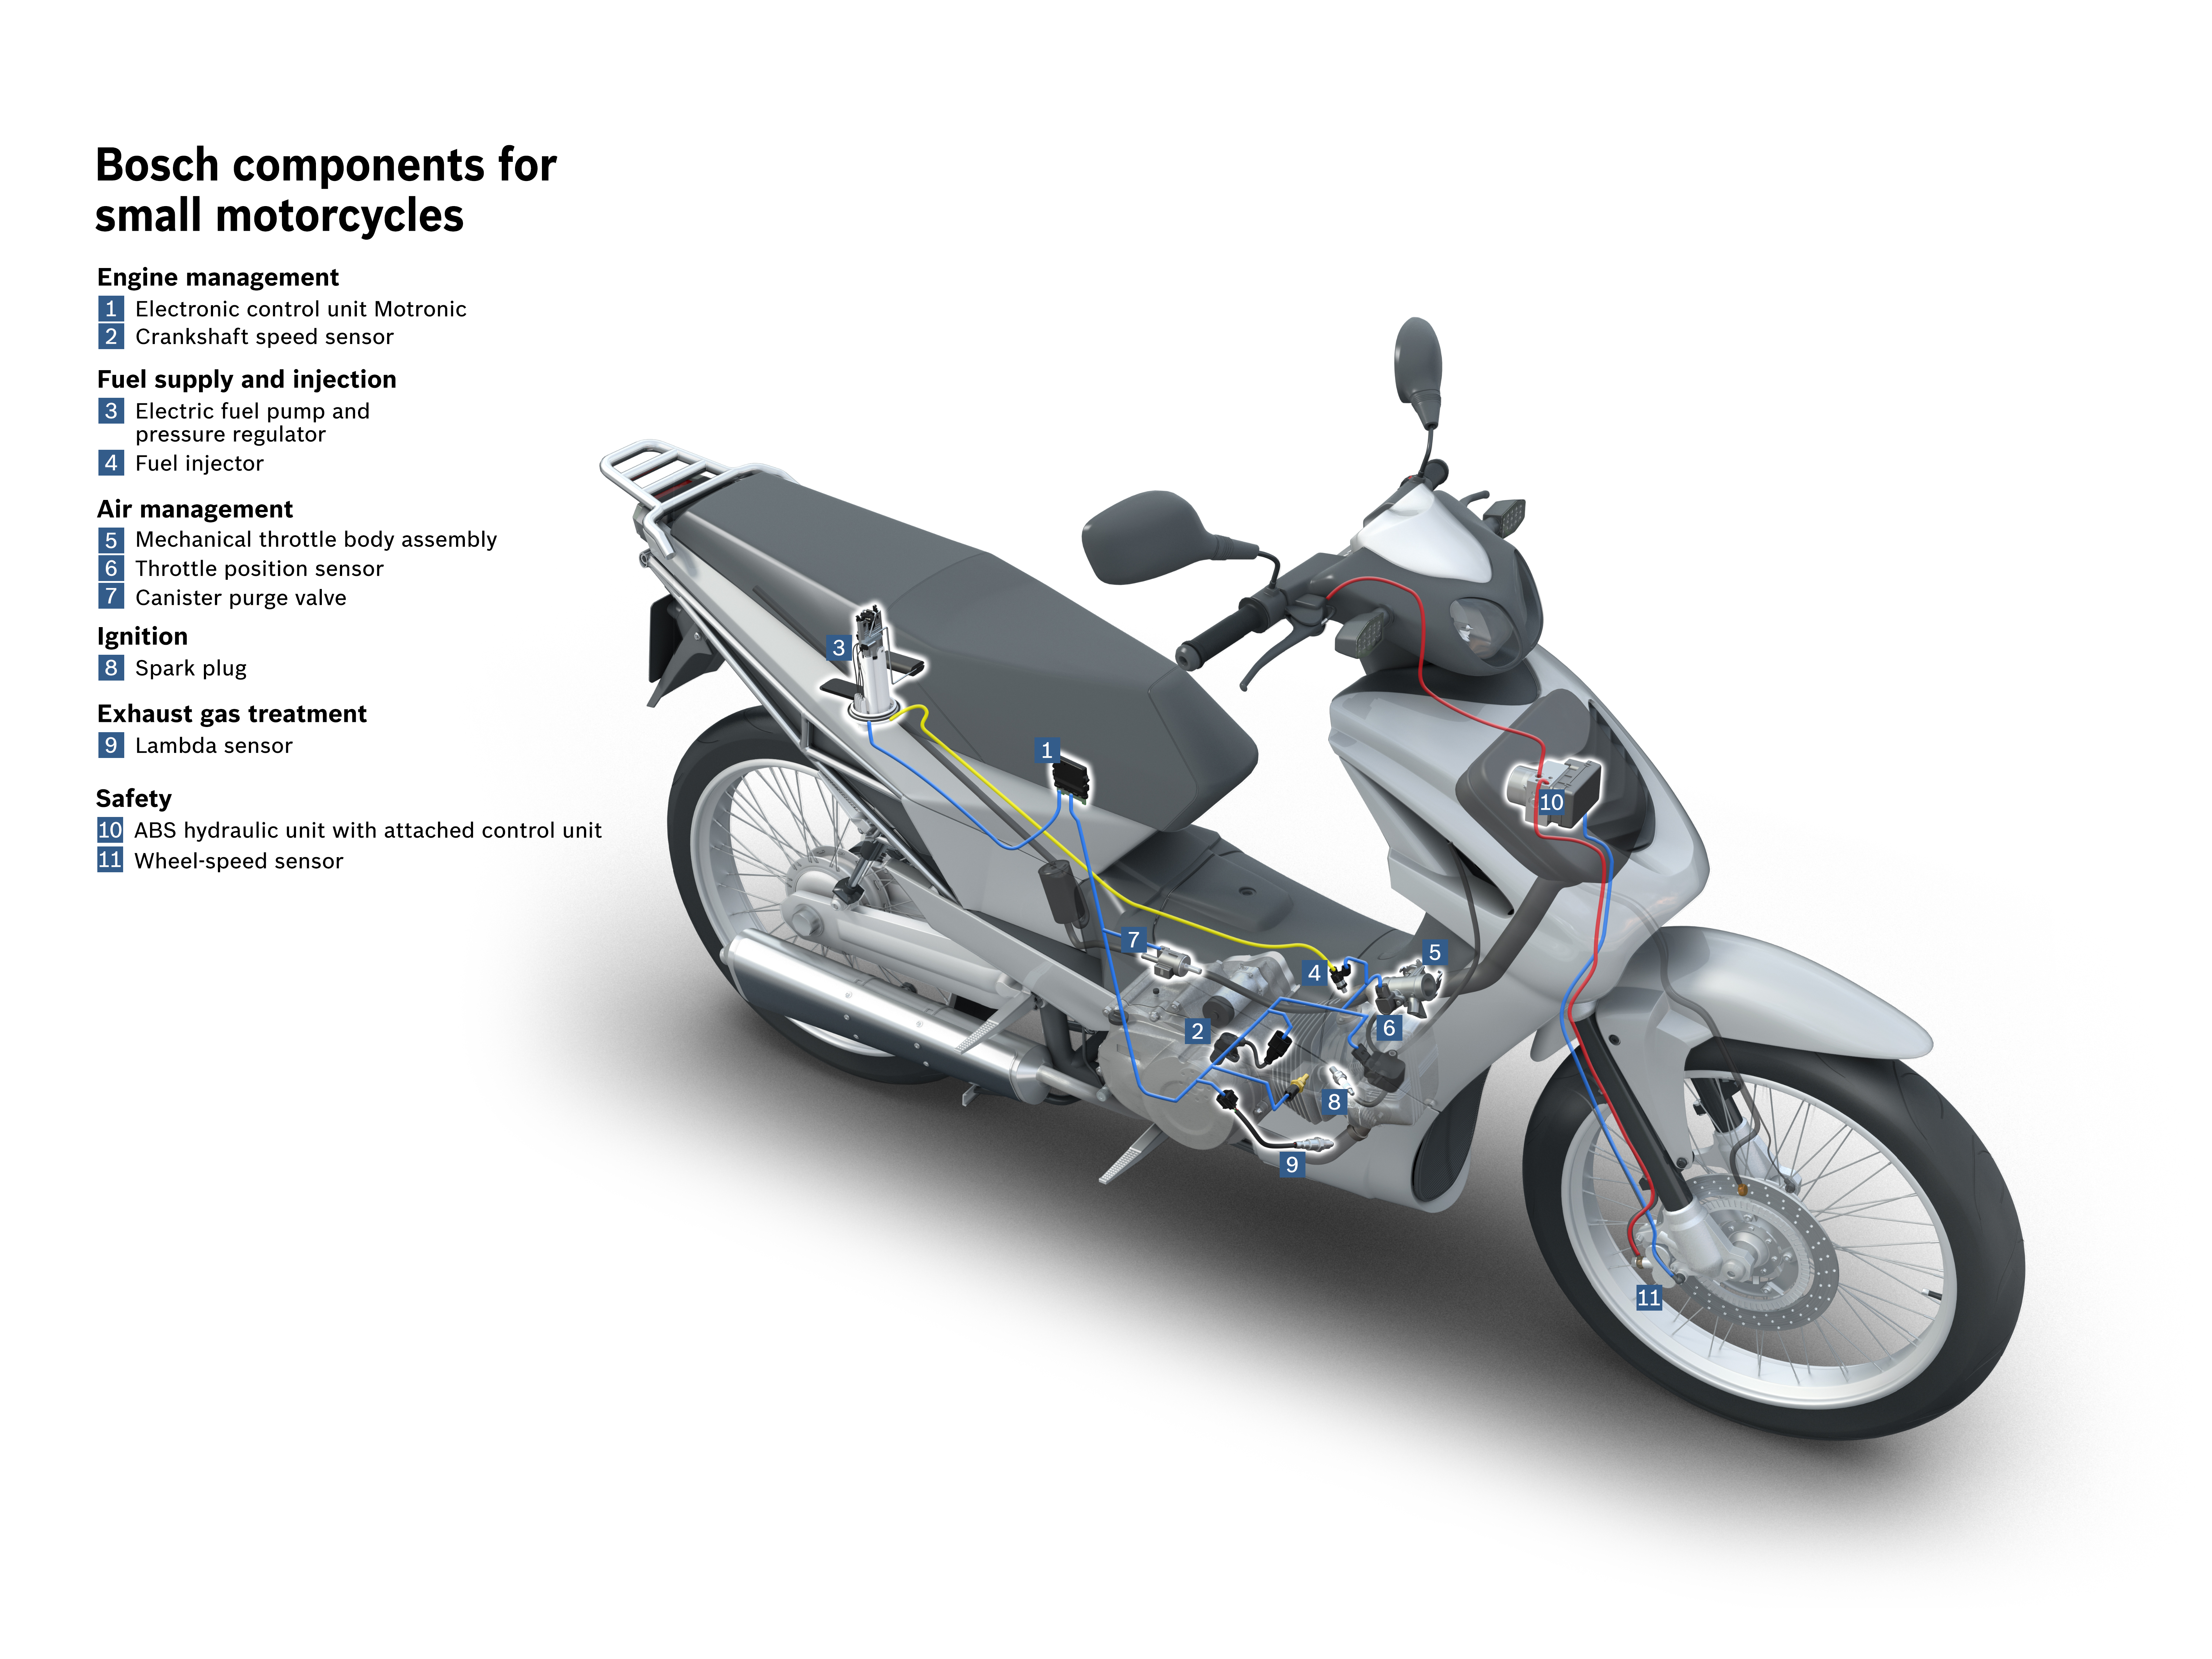 EICMA International Motorcycle Show 2015 - Le innovazioni di Bosch offrono più sicurezza, comodità, efficienza e divertimento alla guida per le due ruote